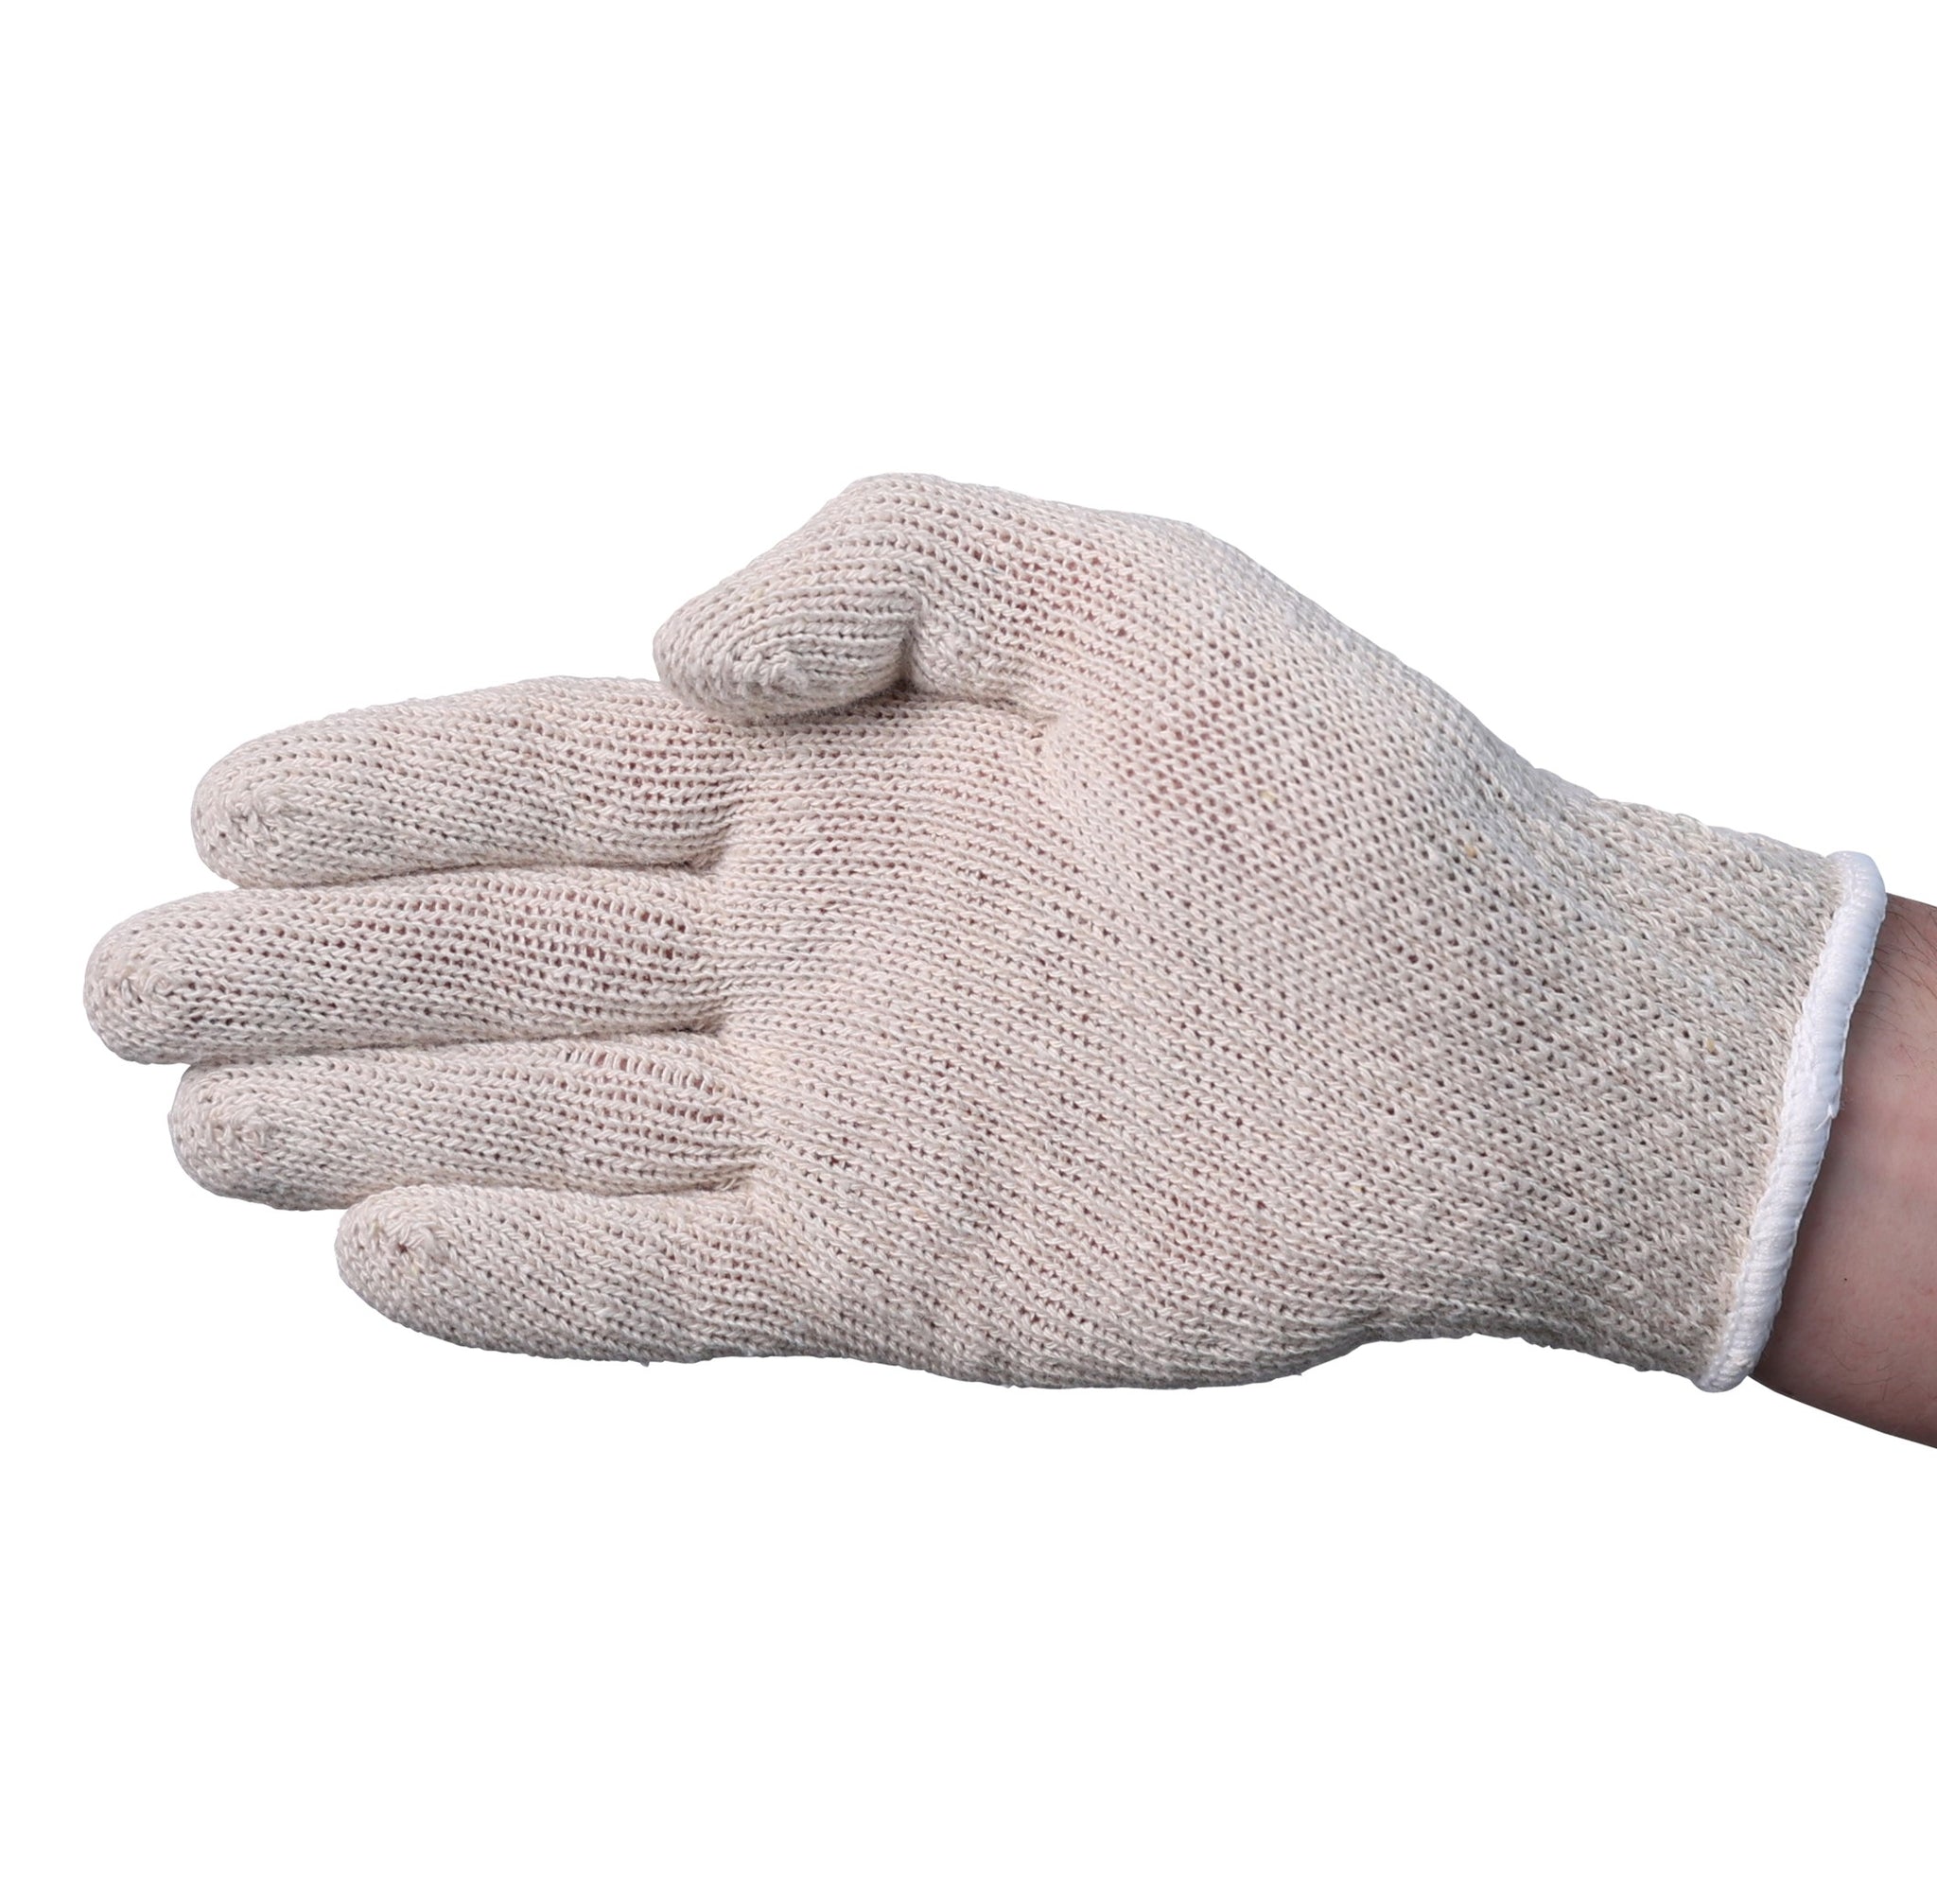 SKVG100 Gloves